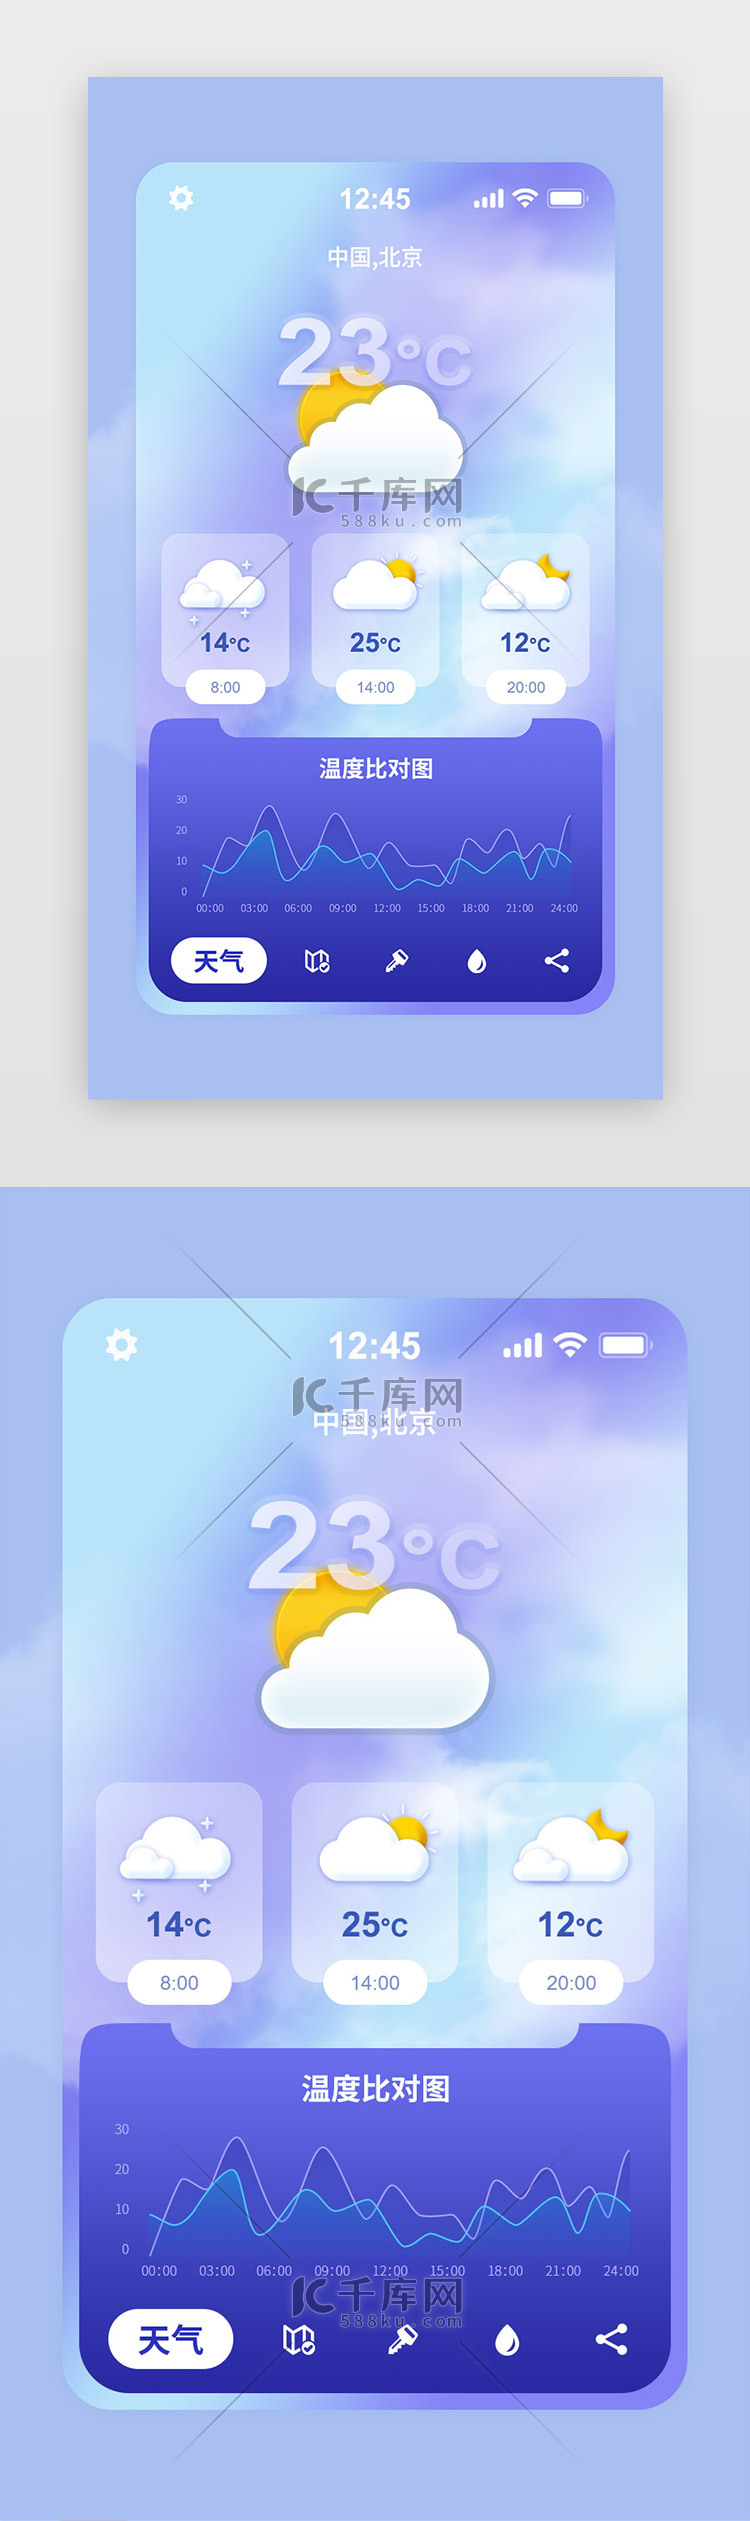 天气预报app主页面半透明紫色气象元素